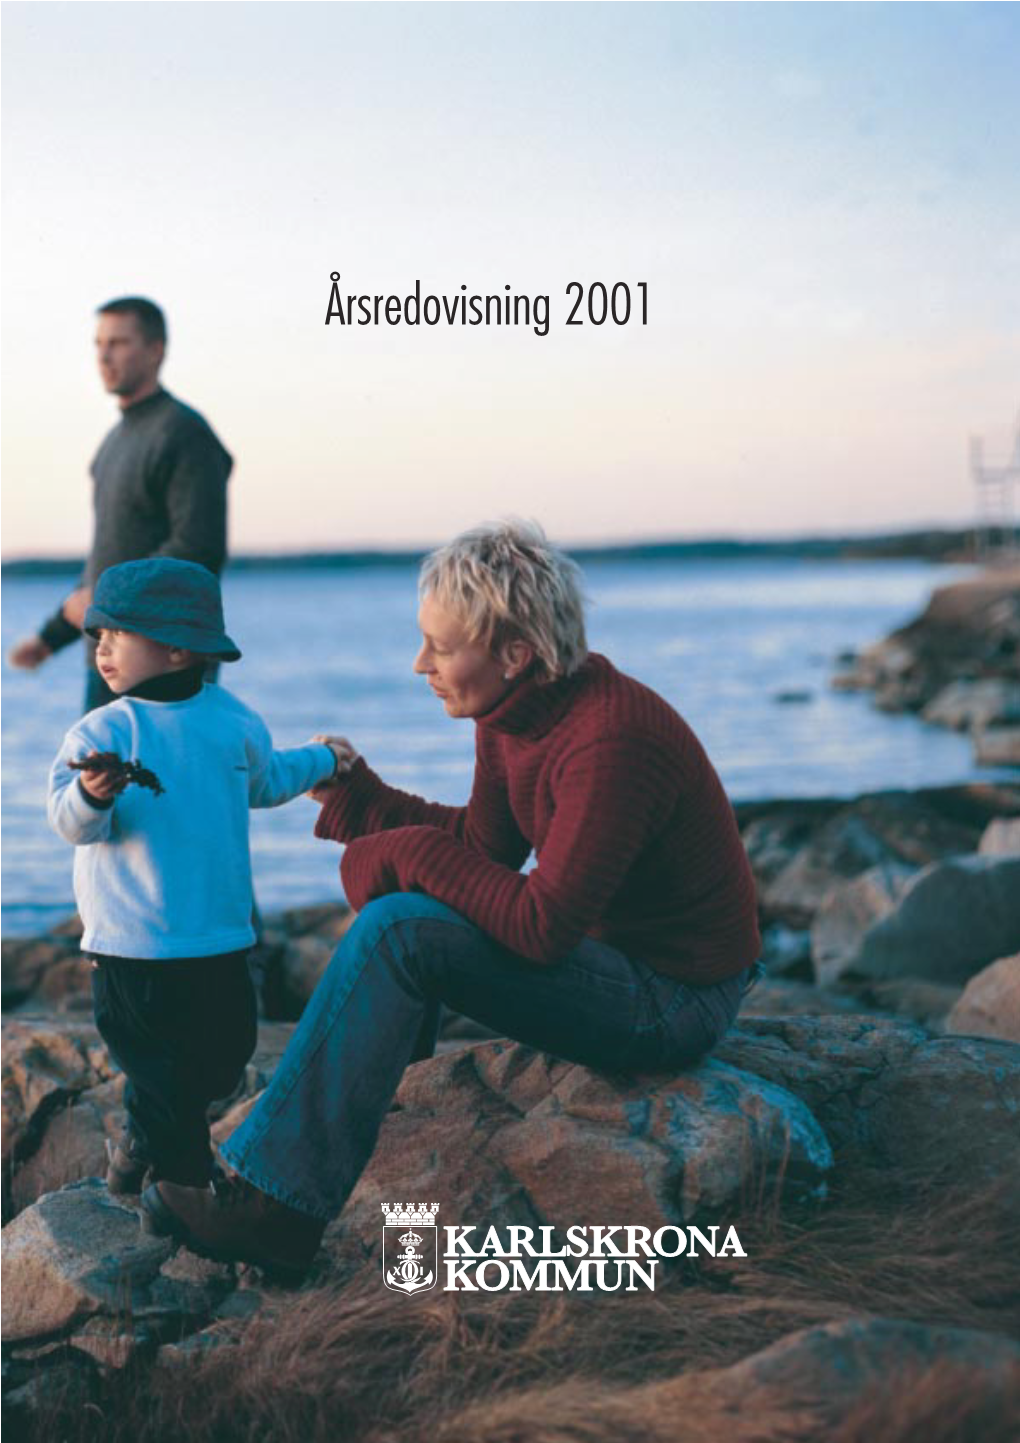 ÅRSREDOVISNING 2001 • KARLSKRONA KOMMUN Därför Karlskrona